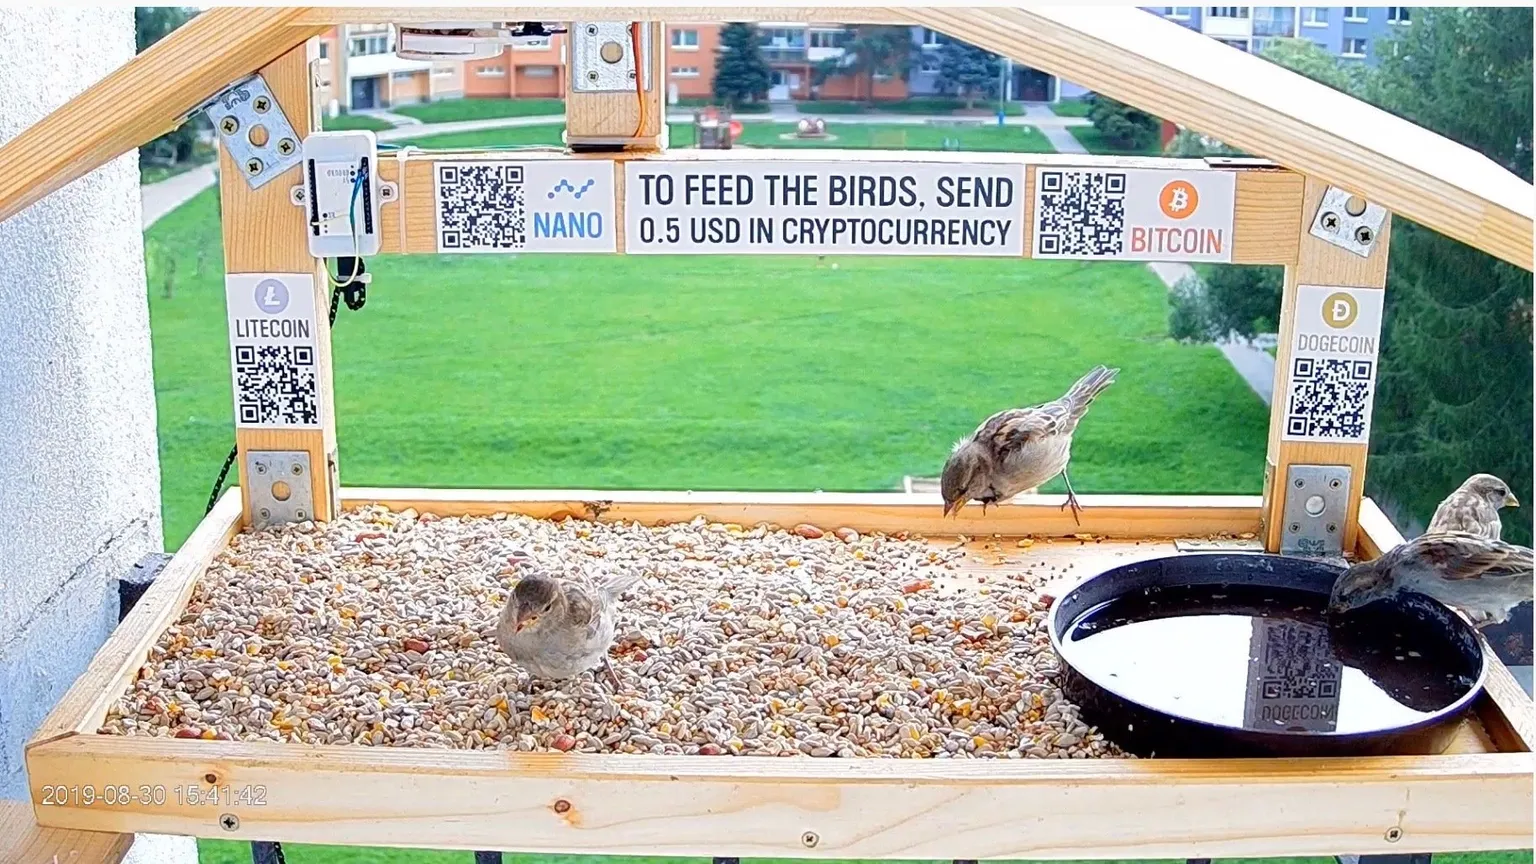 Bitcoin bird-feeder